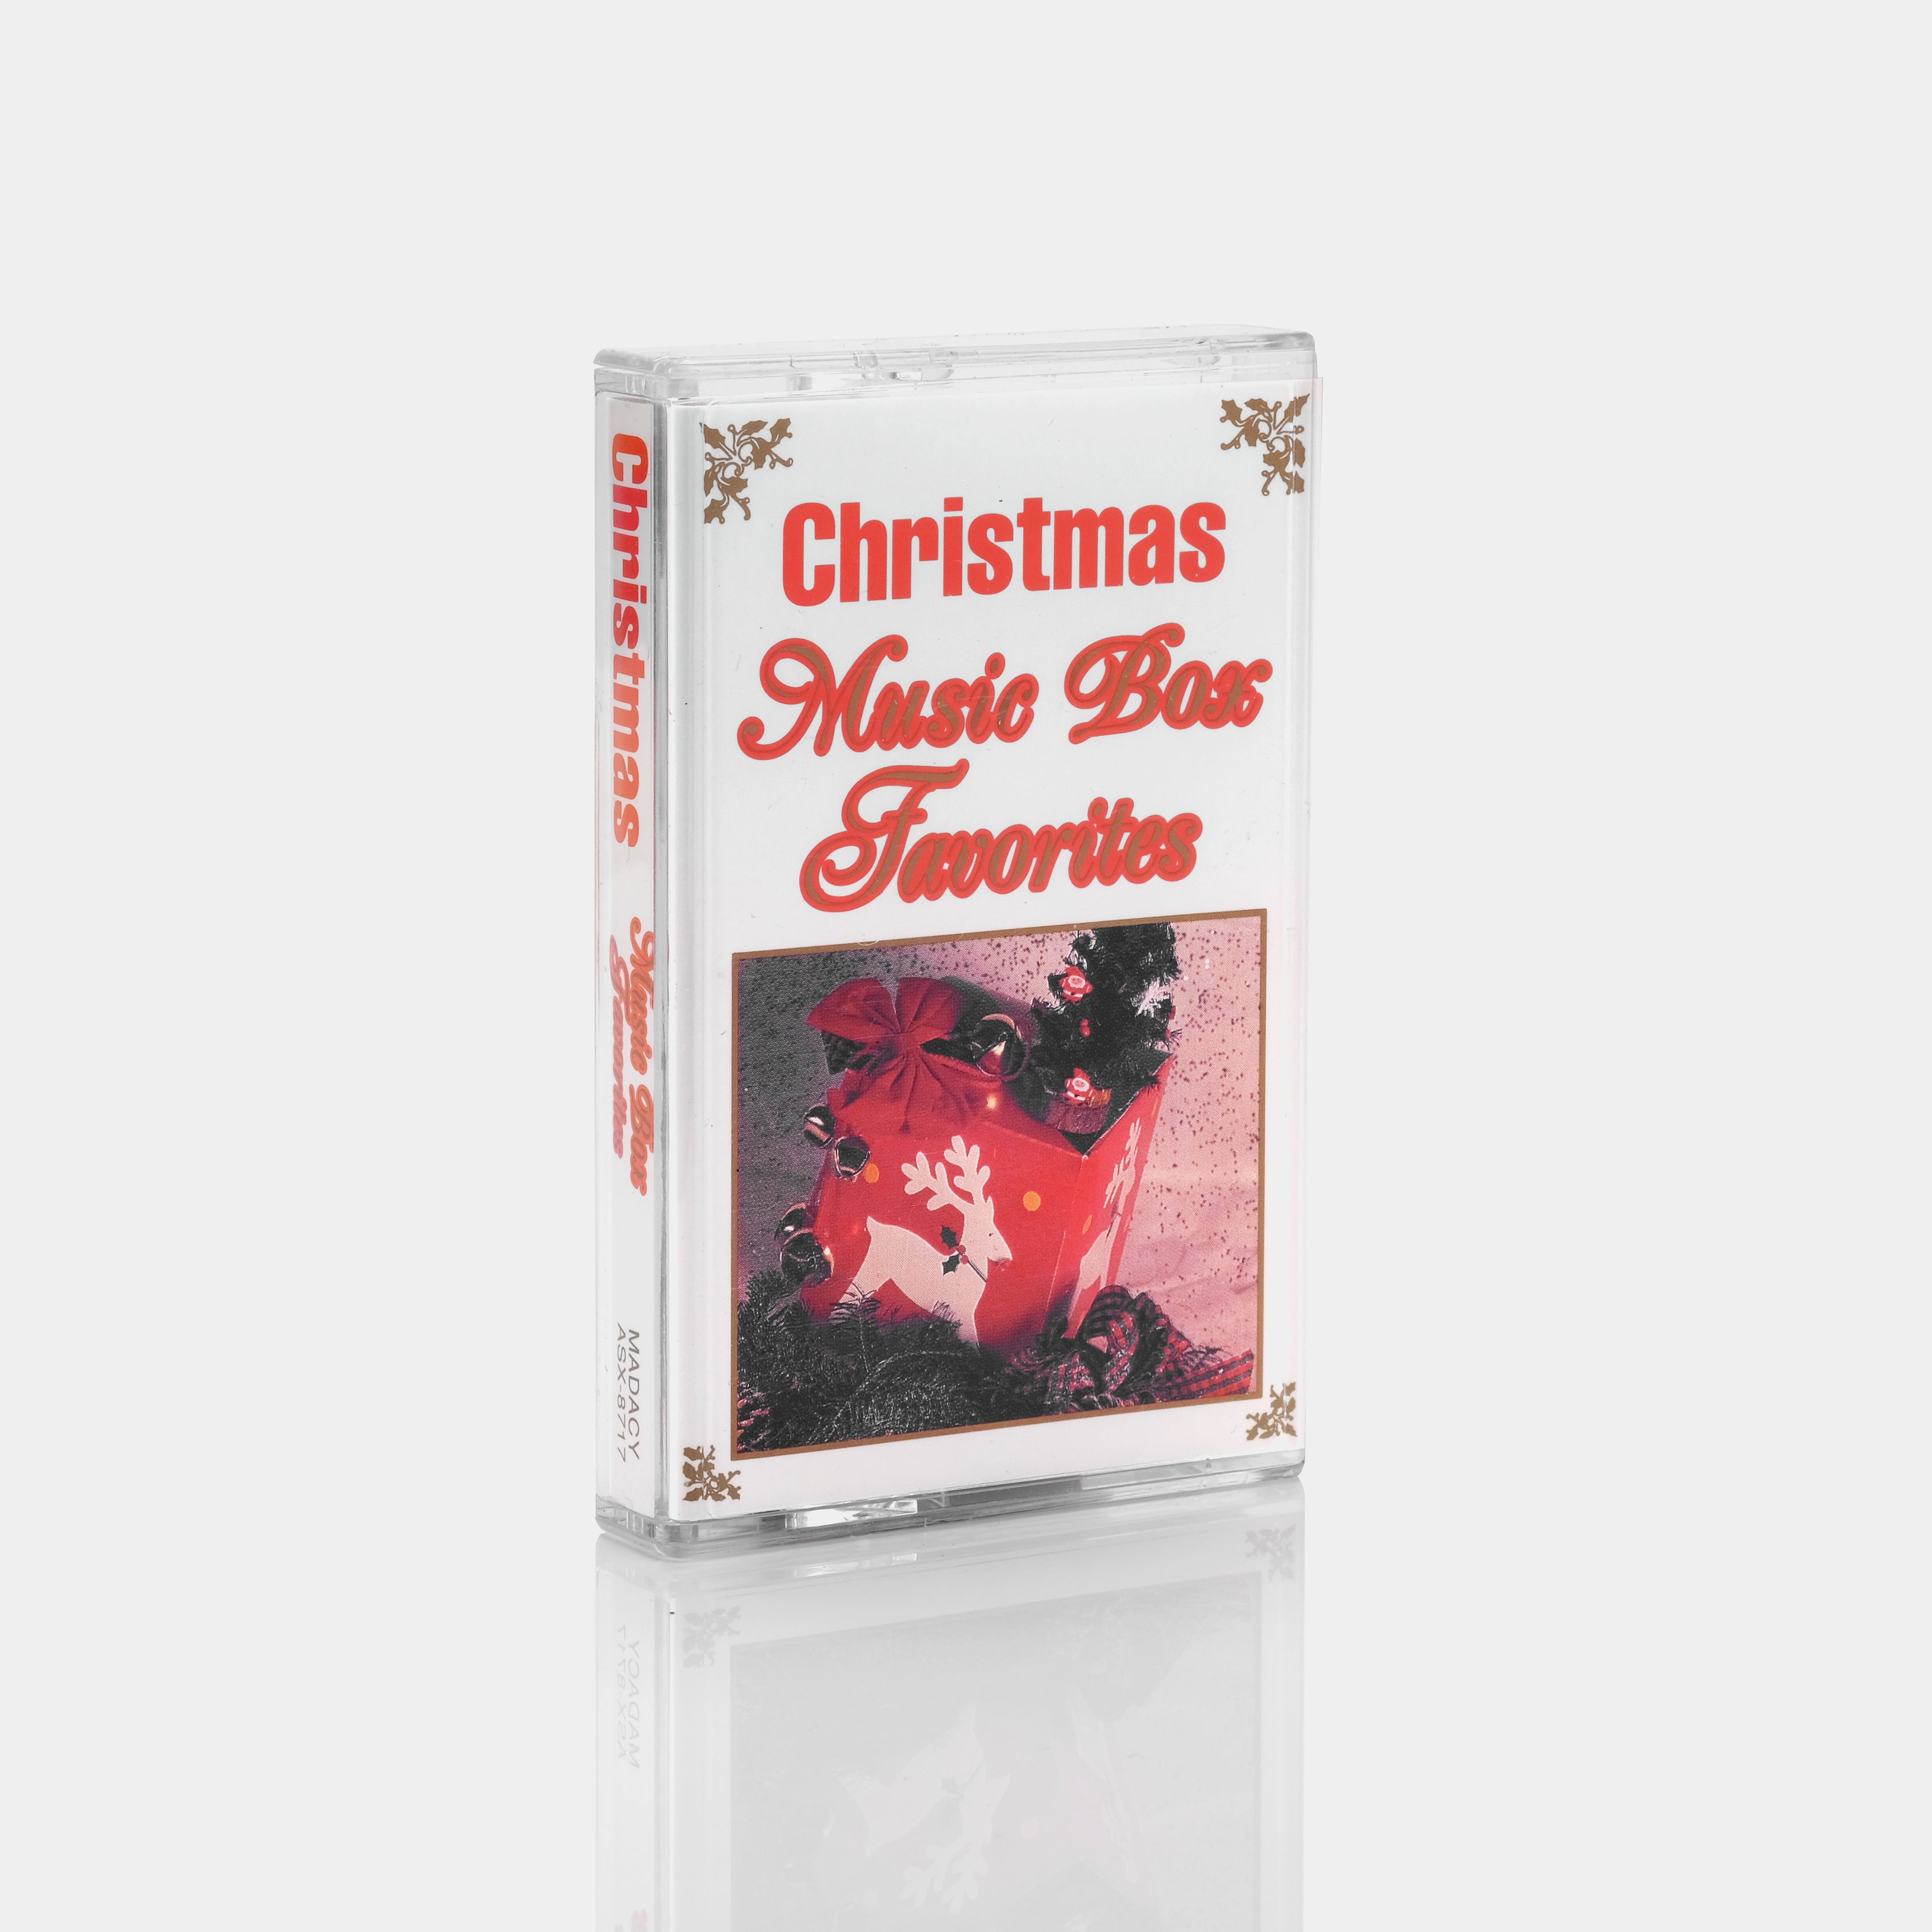 Christmas Music Box Favorites Cassette Tape